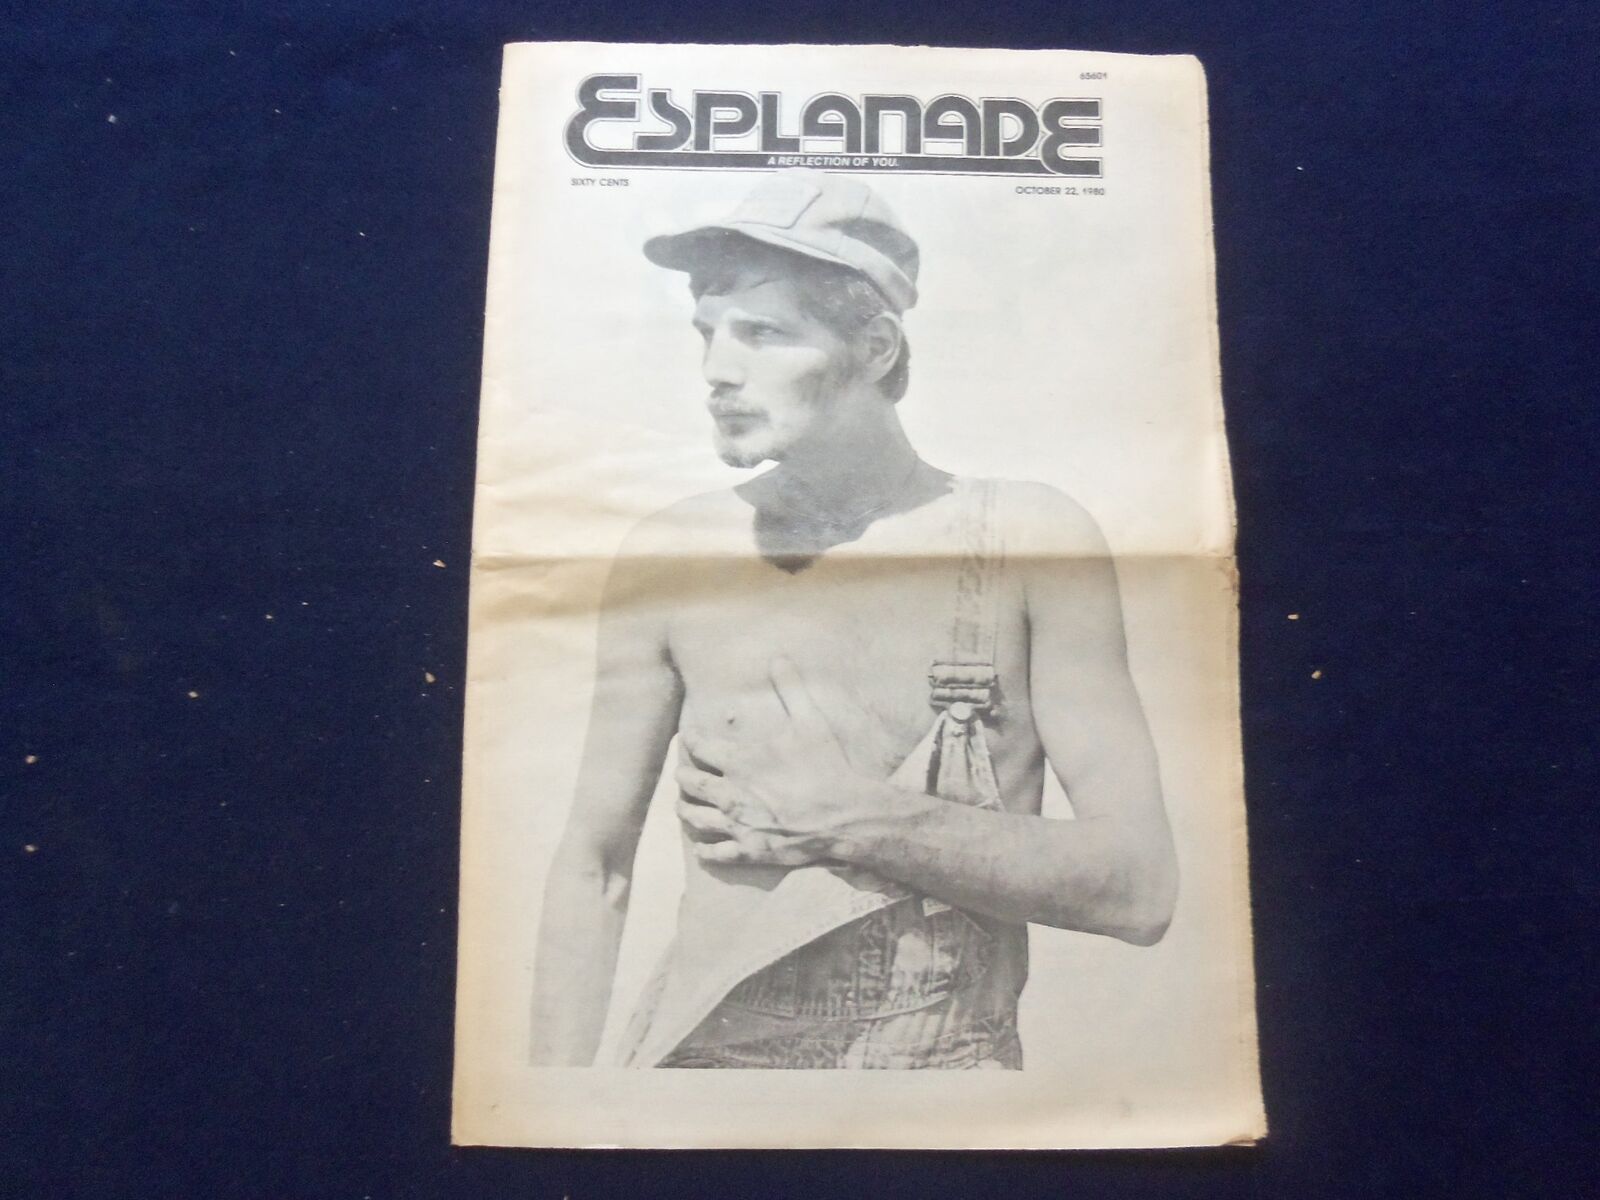 1980 OCTOBER 22 ESPLANADE NEWSPAPER - HARDLY EVEN A SMILE - NP 6838